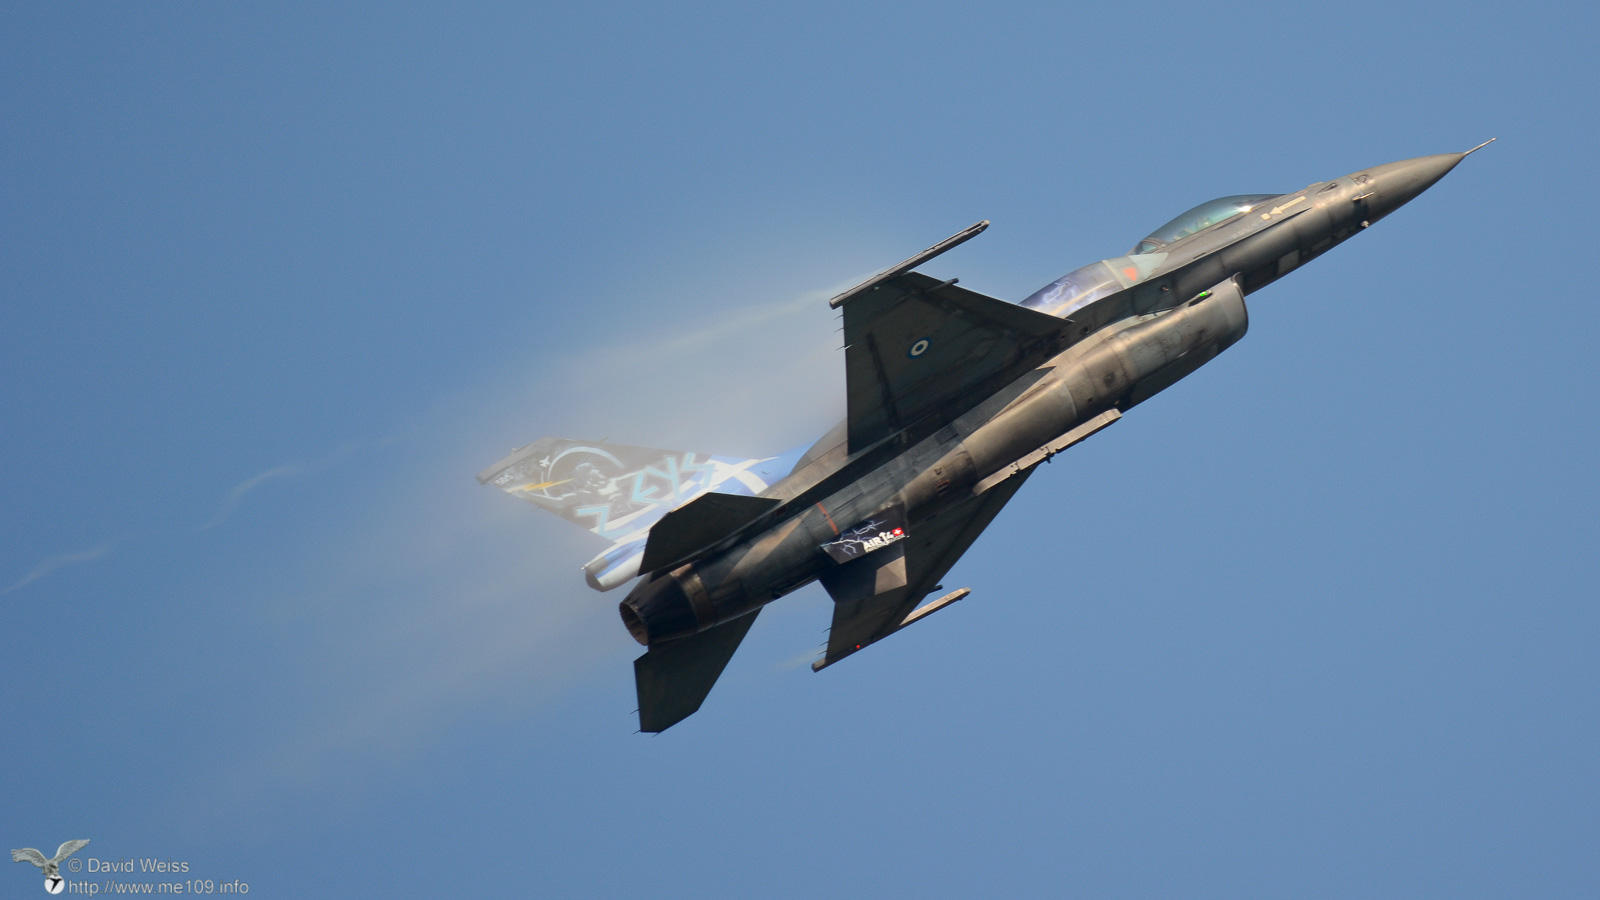 F-16_Fighting_Falcon_DSC_6079.jpg